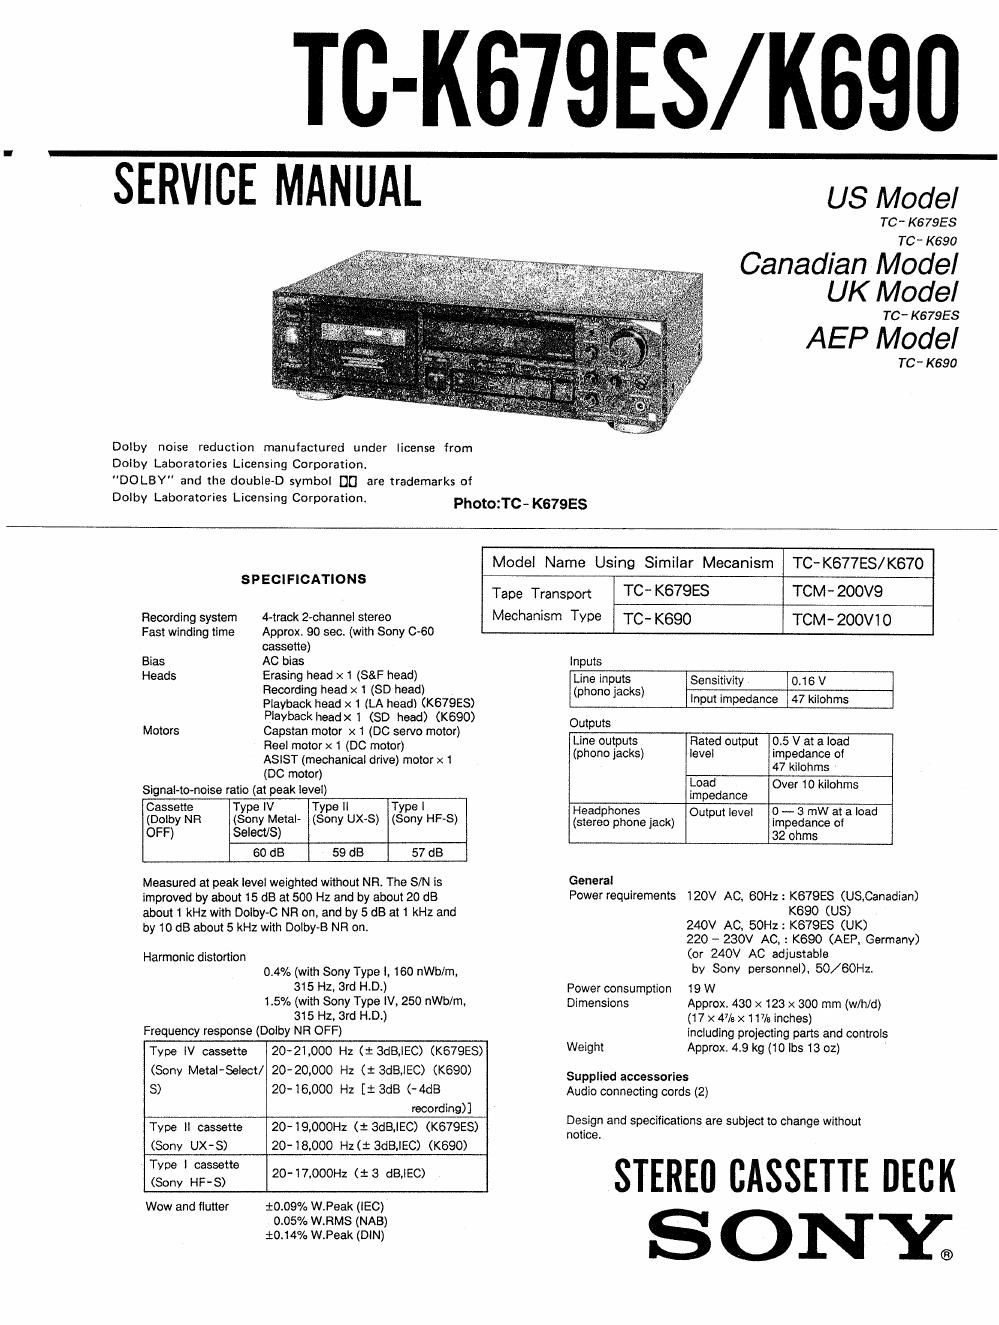 sony tc k 690 service manual